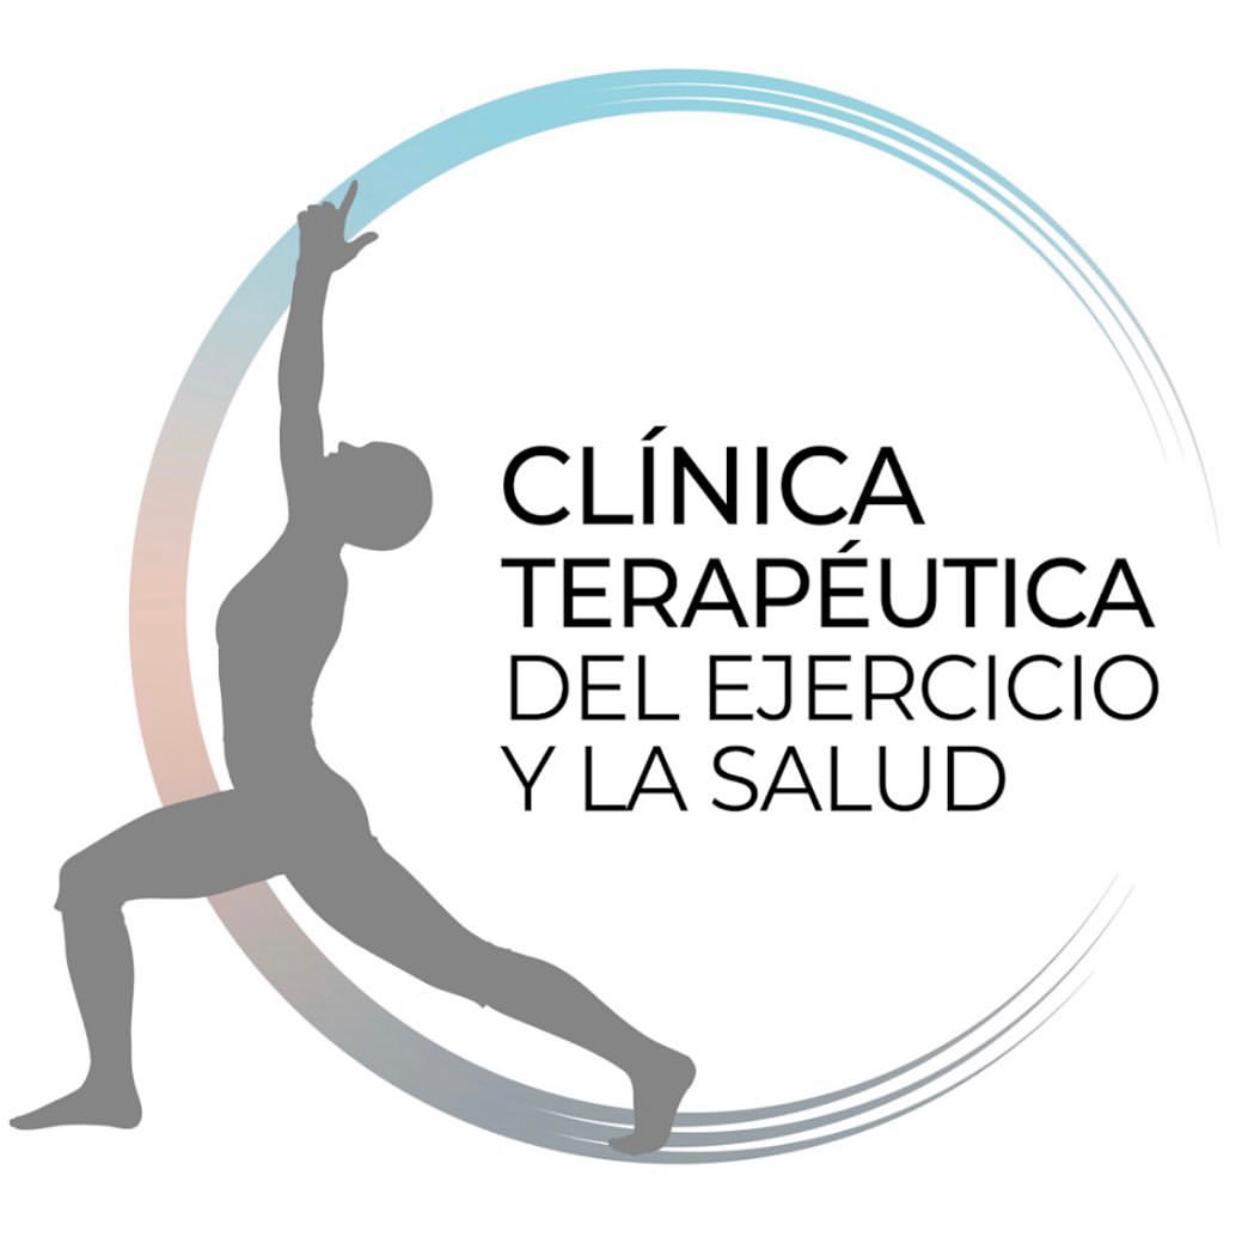 Clinica Terapeutica